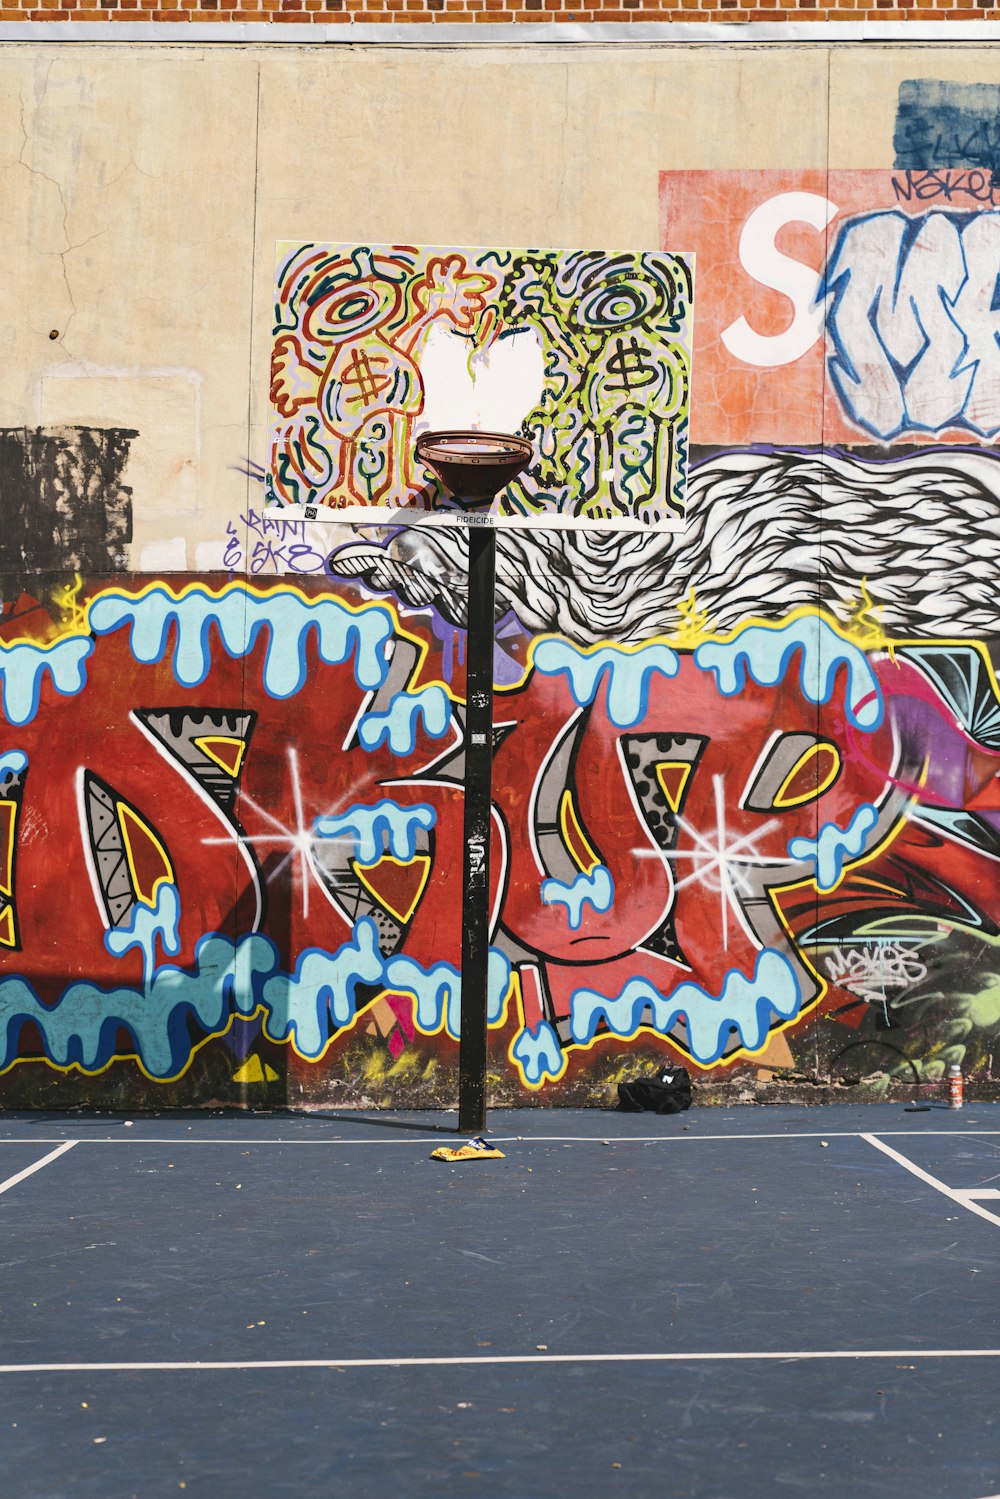 painted basketball hoop near graffiti wall